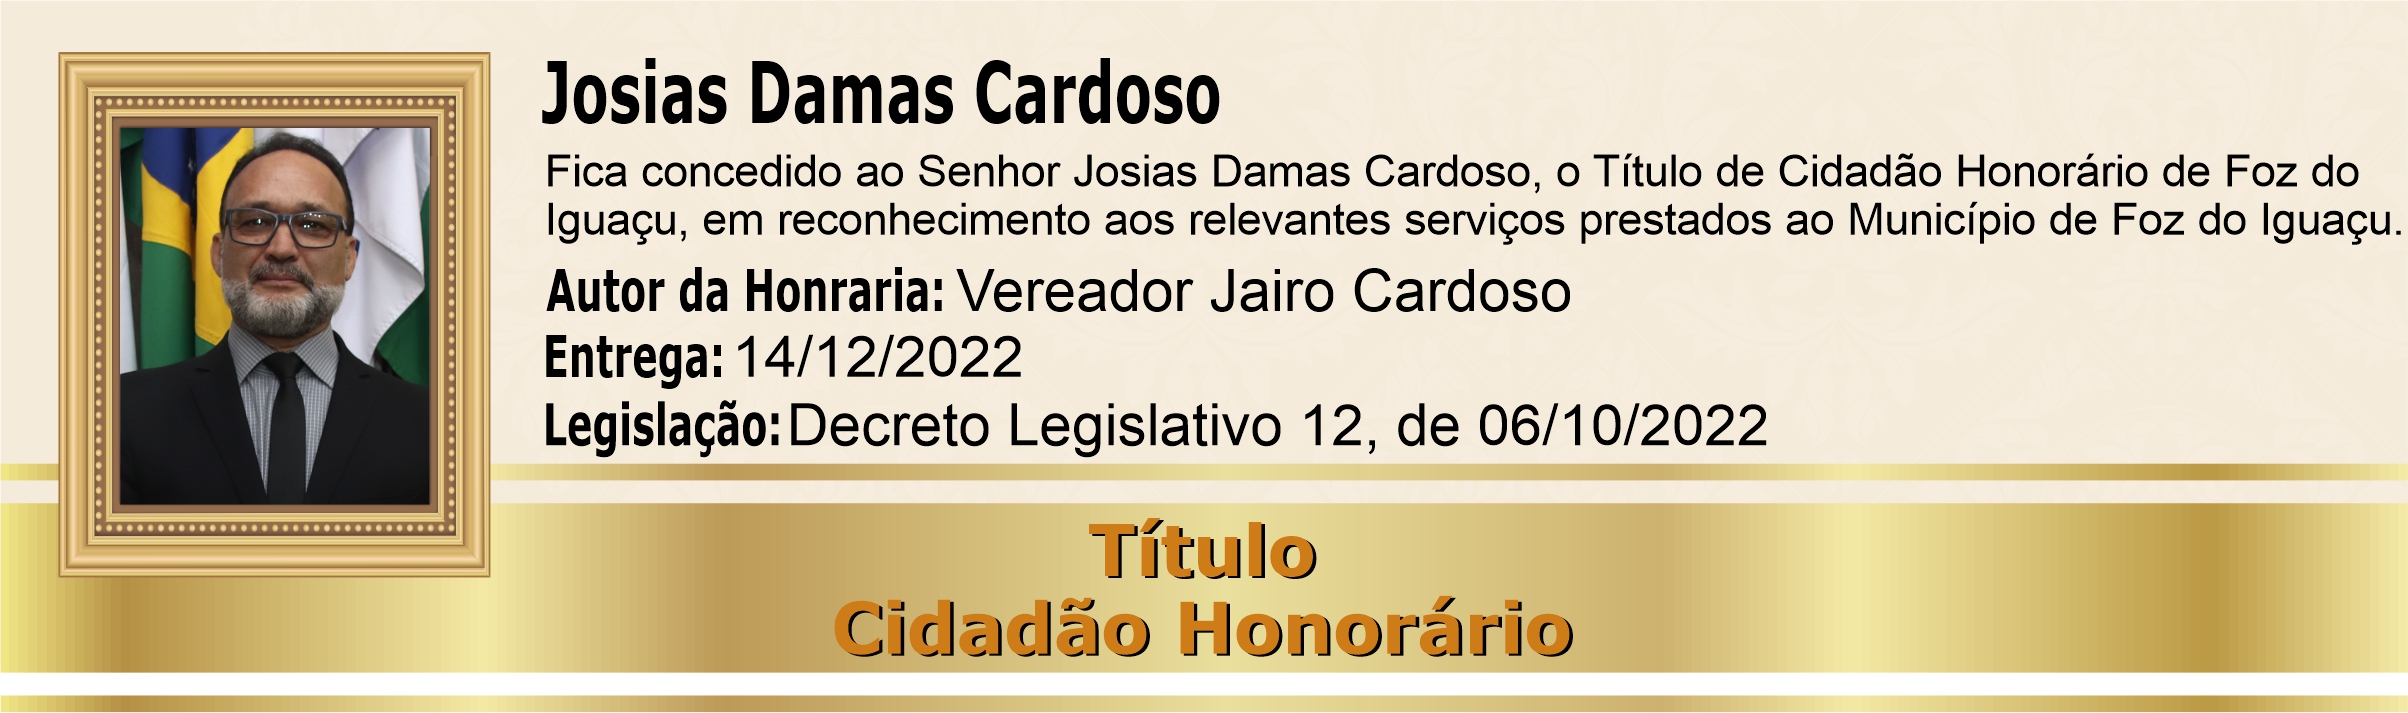 Josias Damas Cardoso